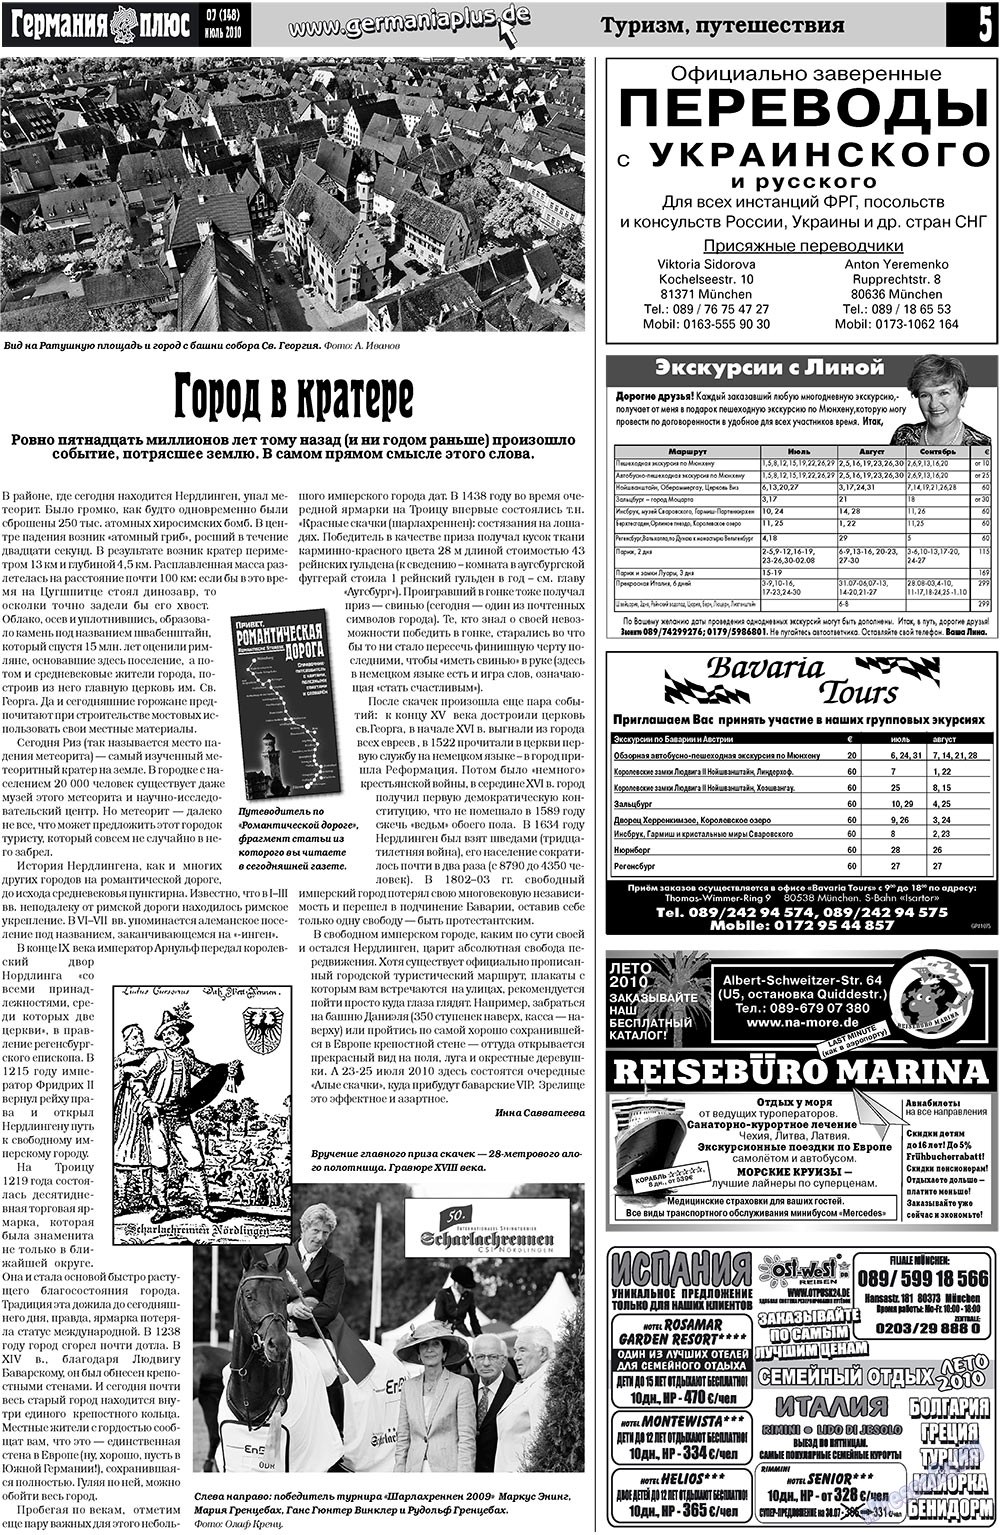 Германия плюс (газета). 2010 год, номер 7, стр. 5